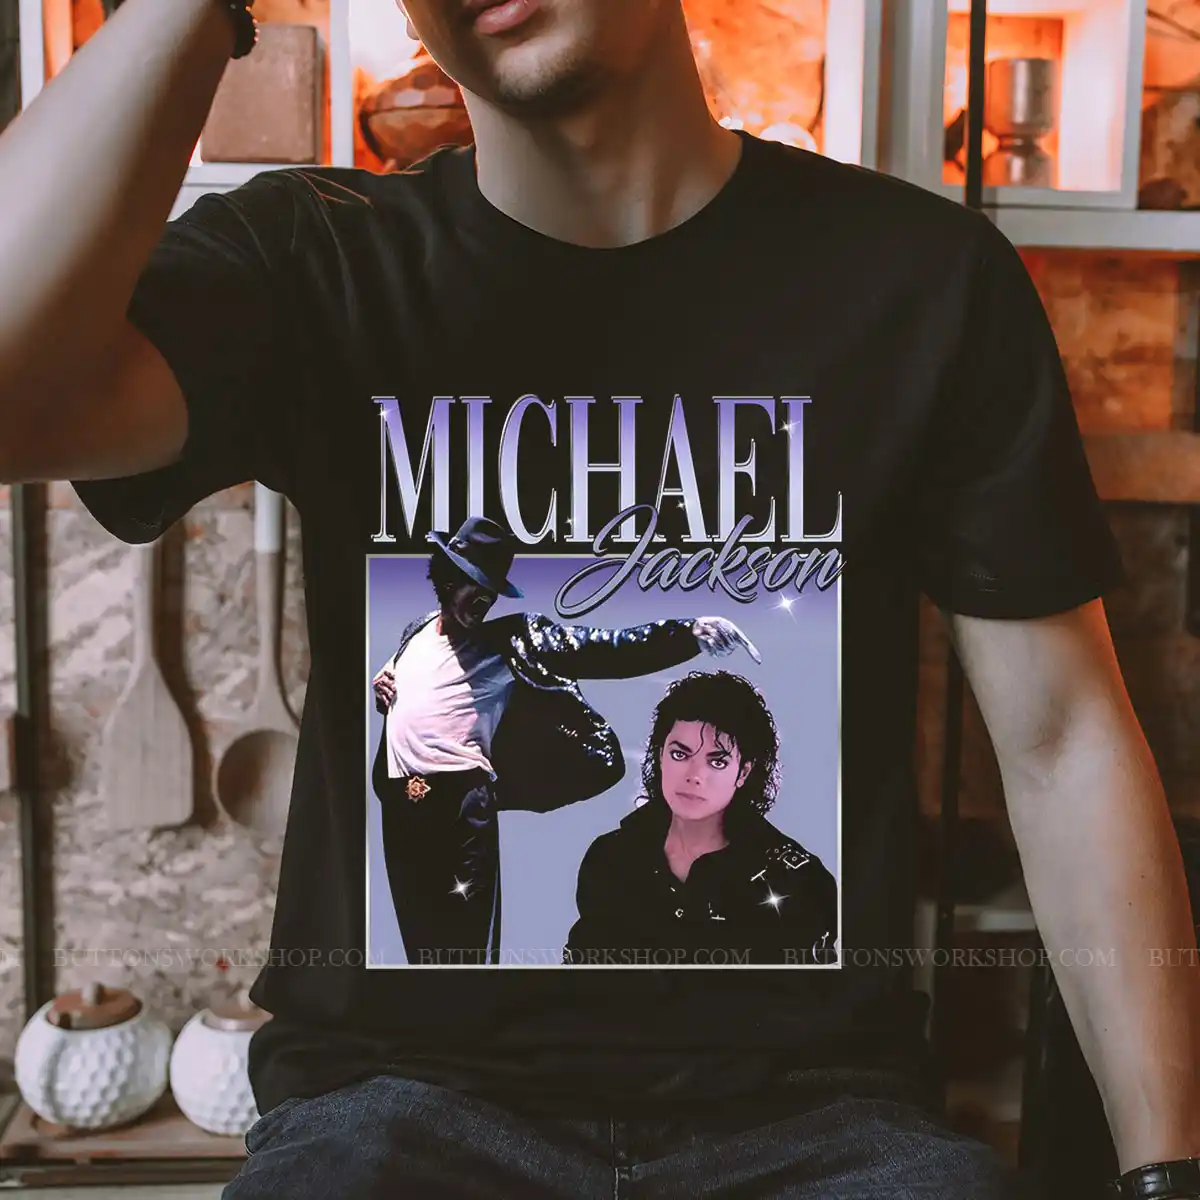 Michael Jackson T Shirt Unisex Tshirt